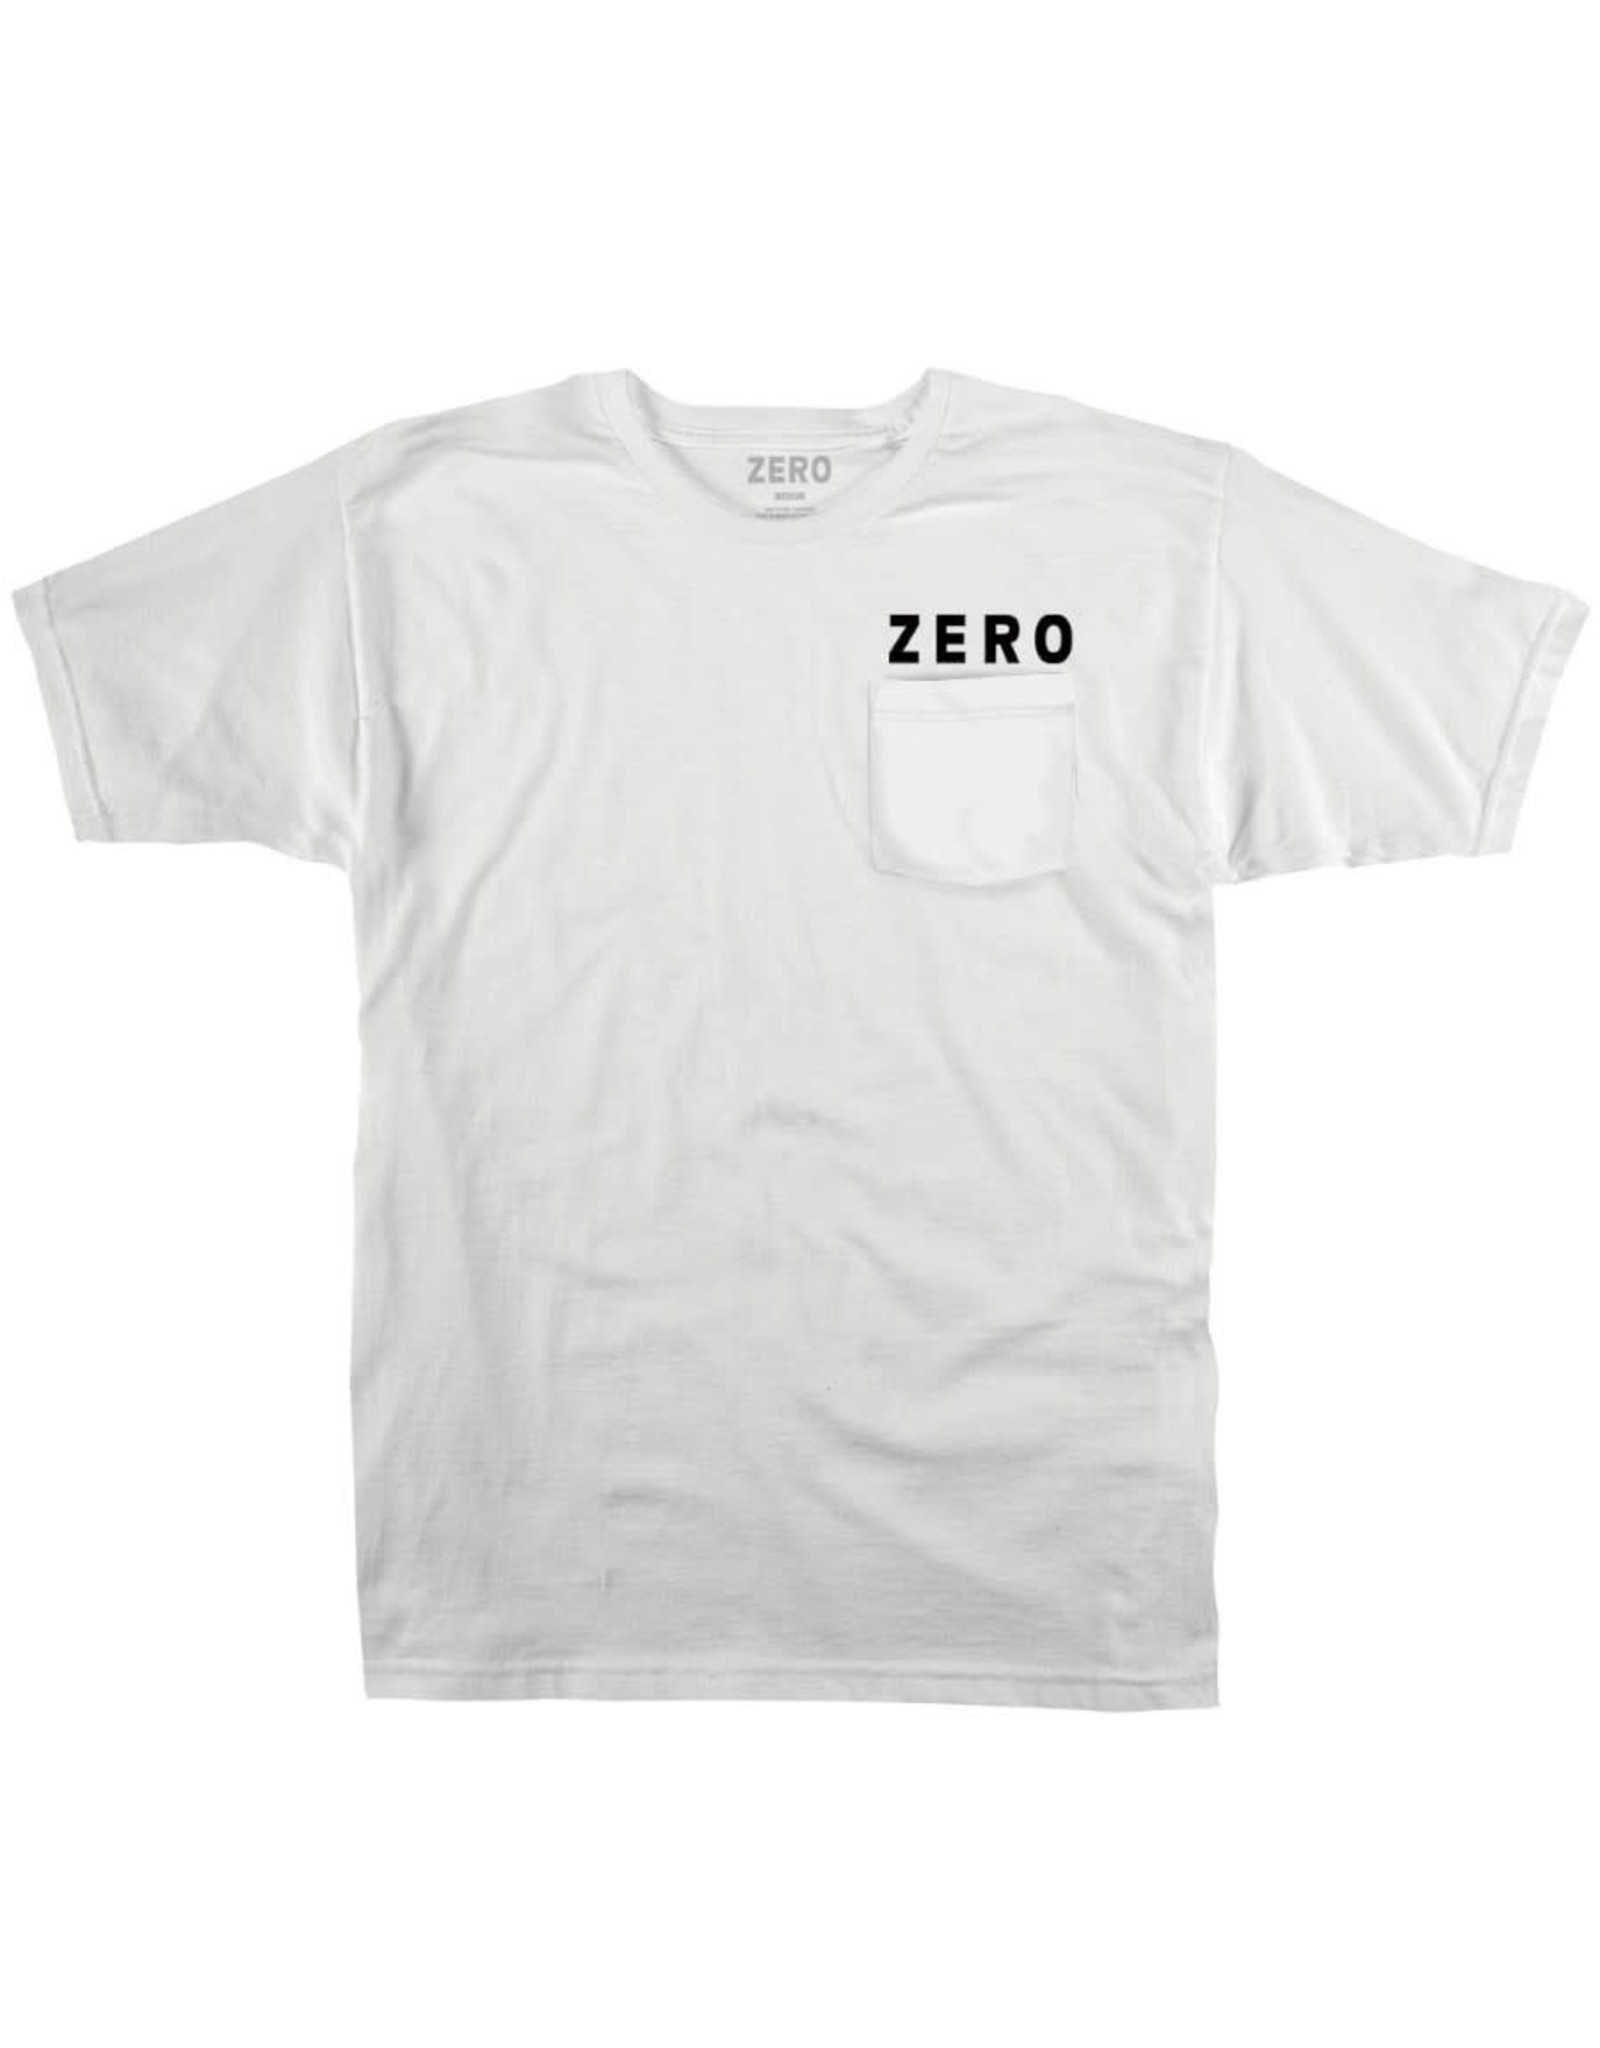 Zero Tee Army Pocket S/S (White)